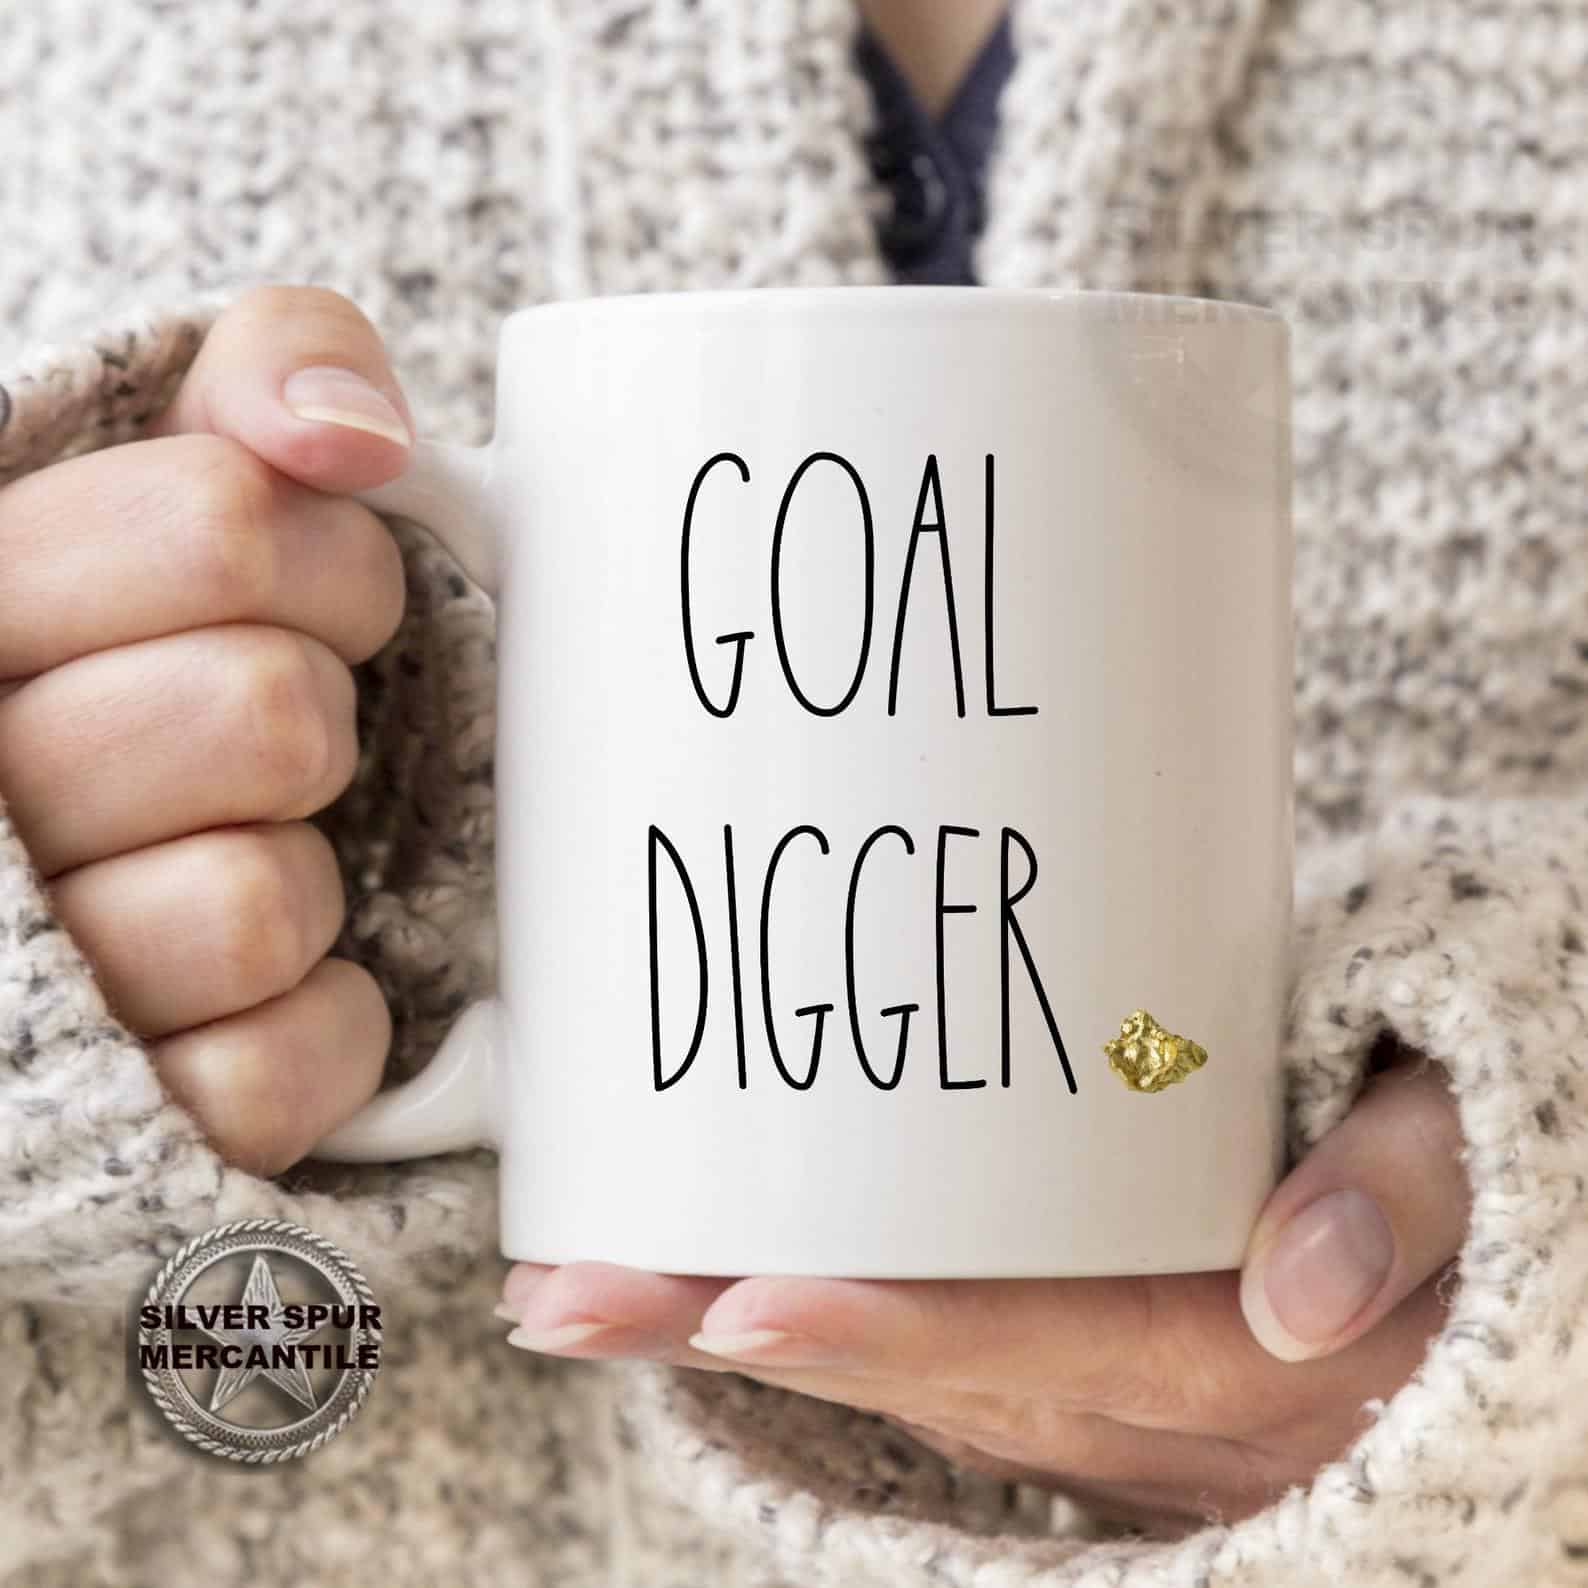 goal digger mug